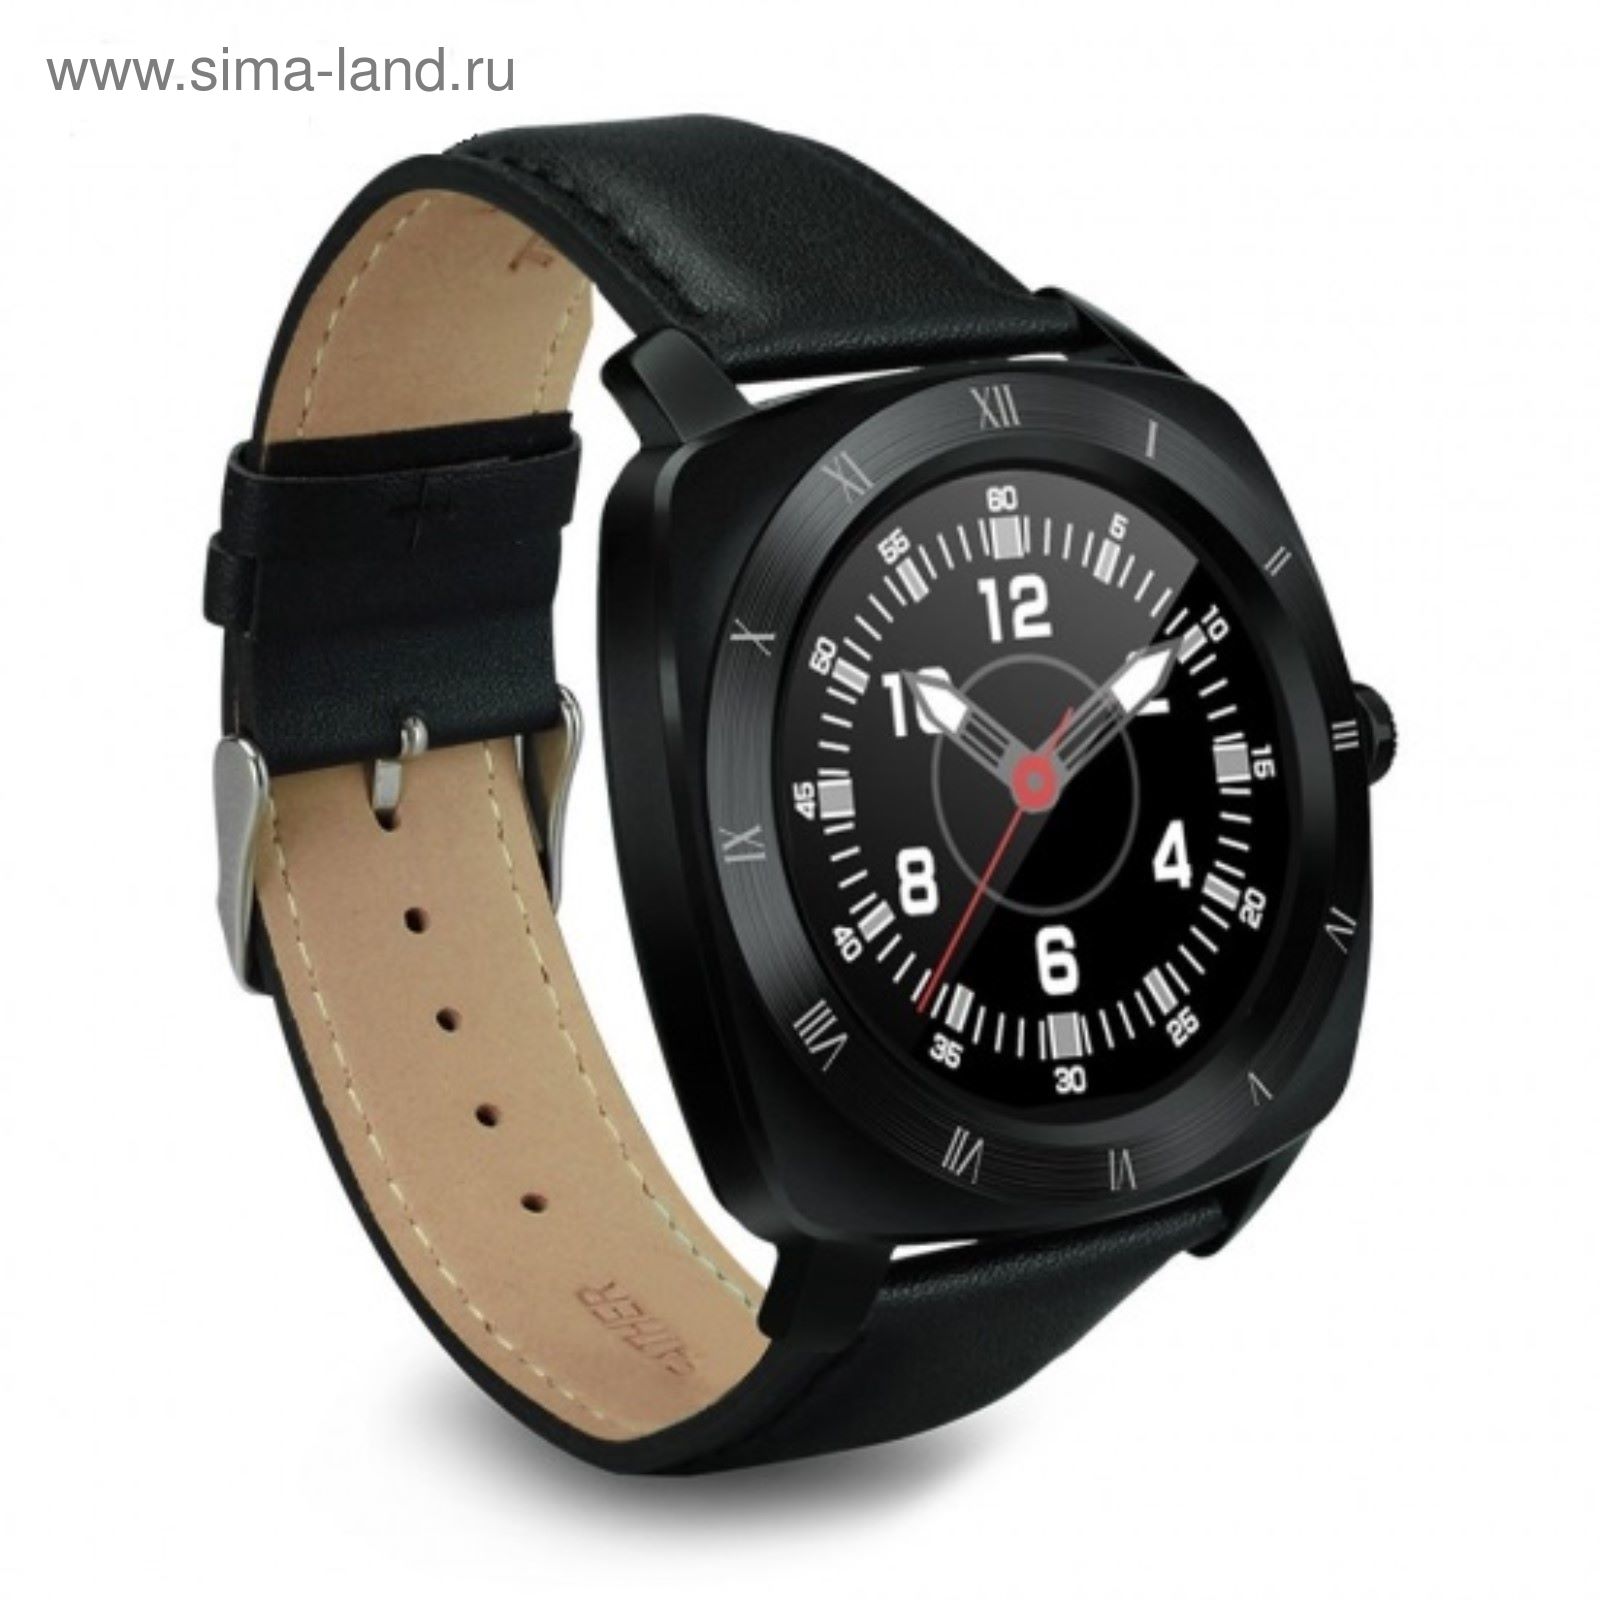 Умные часы Colmi VS70 Bluetooth черные